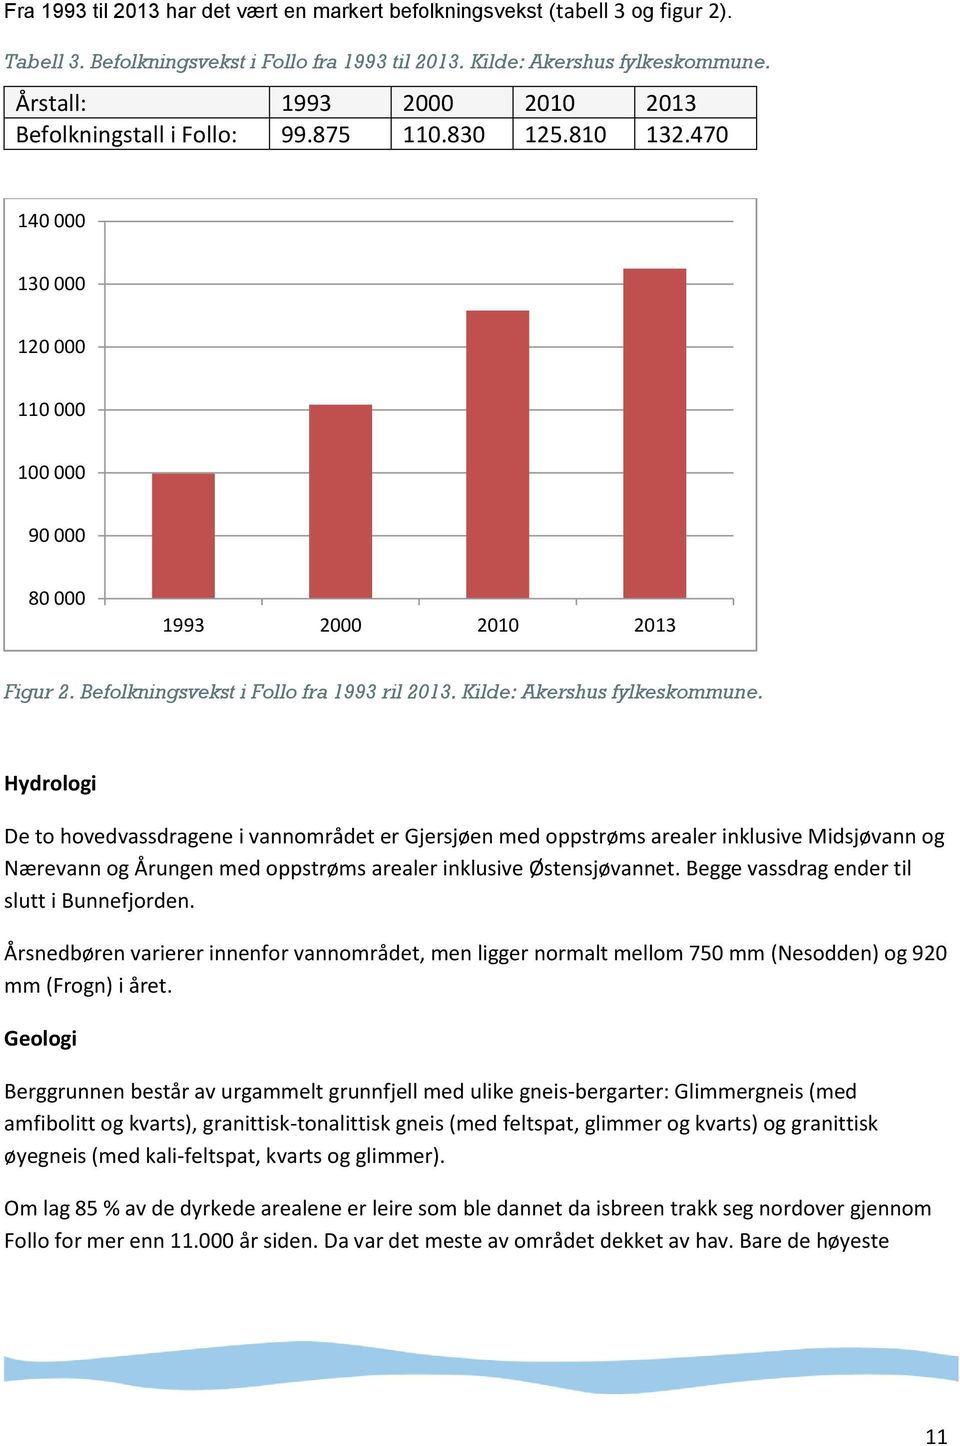 Befolkningsvekst i Follo fra 1993 ril 2013. Kilde: Akershus fylkeskommune.